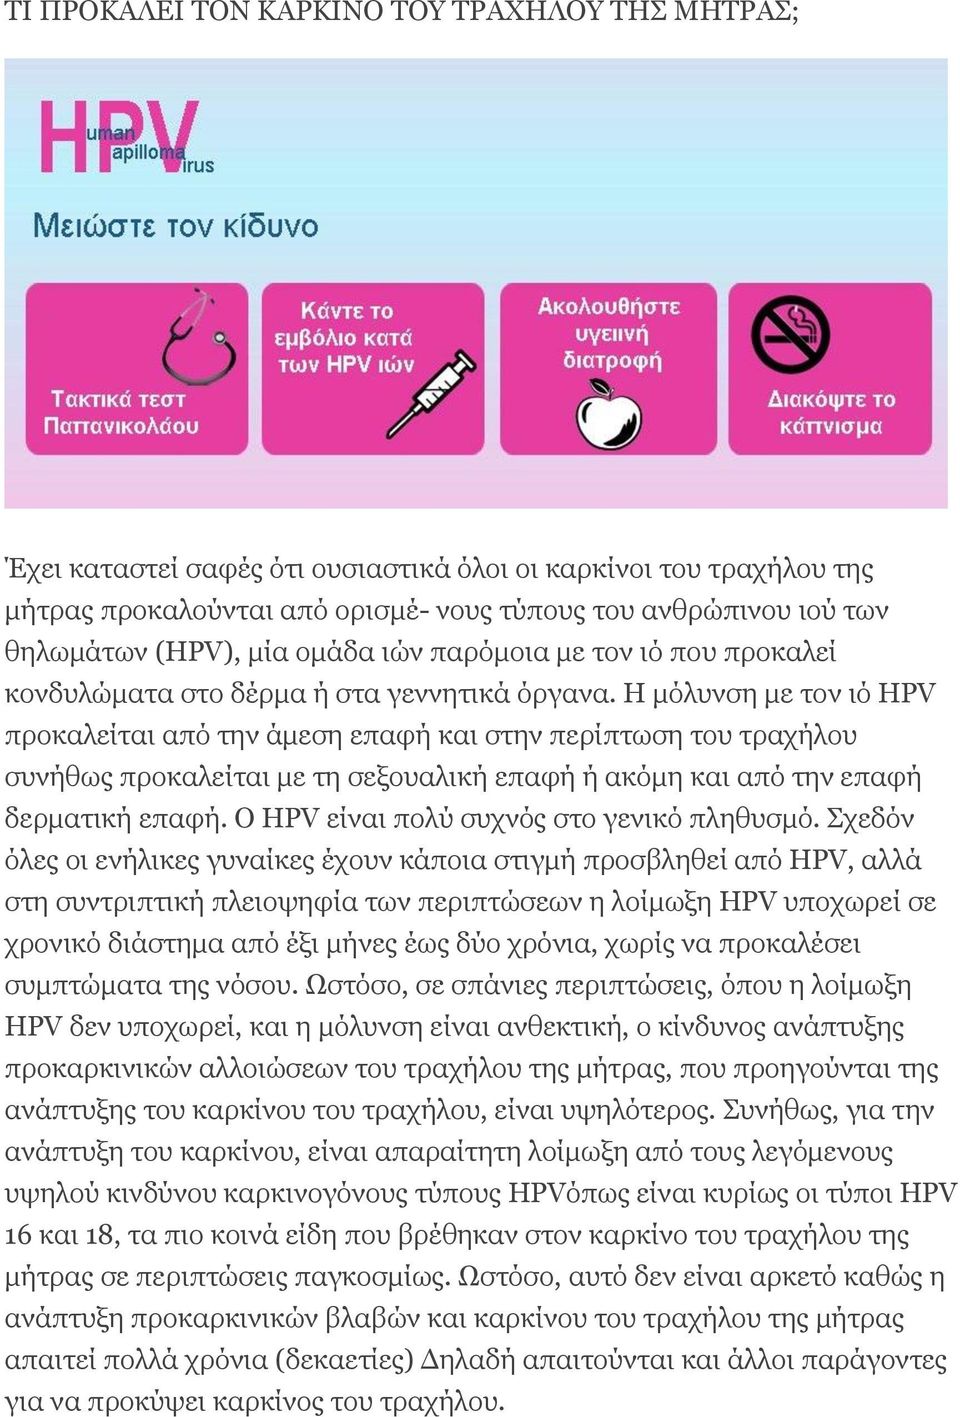 Η μόλυνση με τον ιό HPV προκαλείται από την άμεση επαφή και στην περίπτωση του τραχήλου συνήθως προκαλείται με τη σεξουαλική επαφή ή ακόμη και από την επαφή δερματική επαφή.